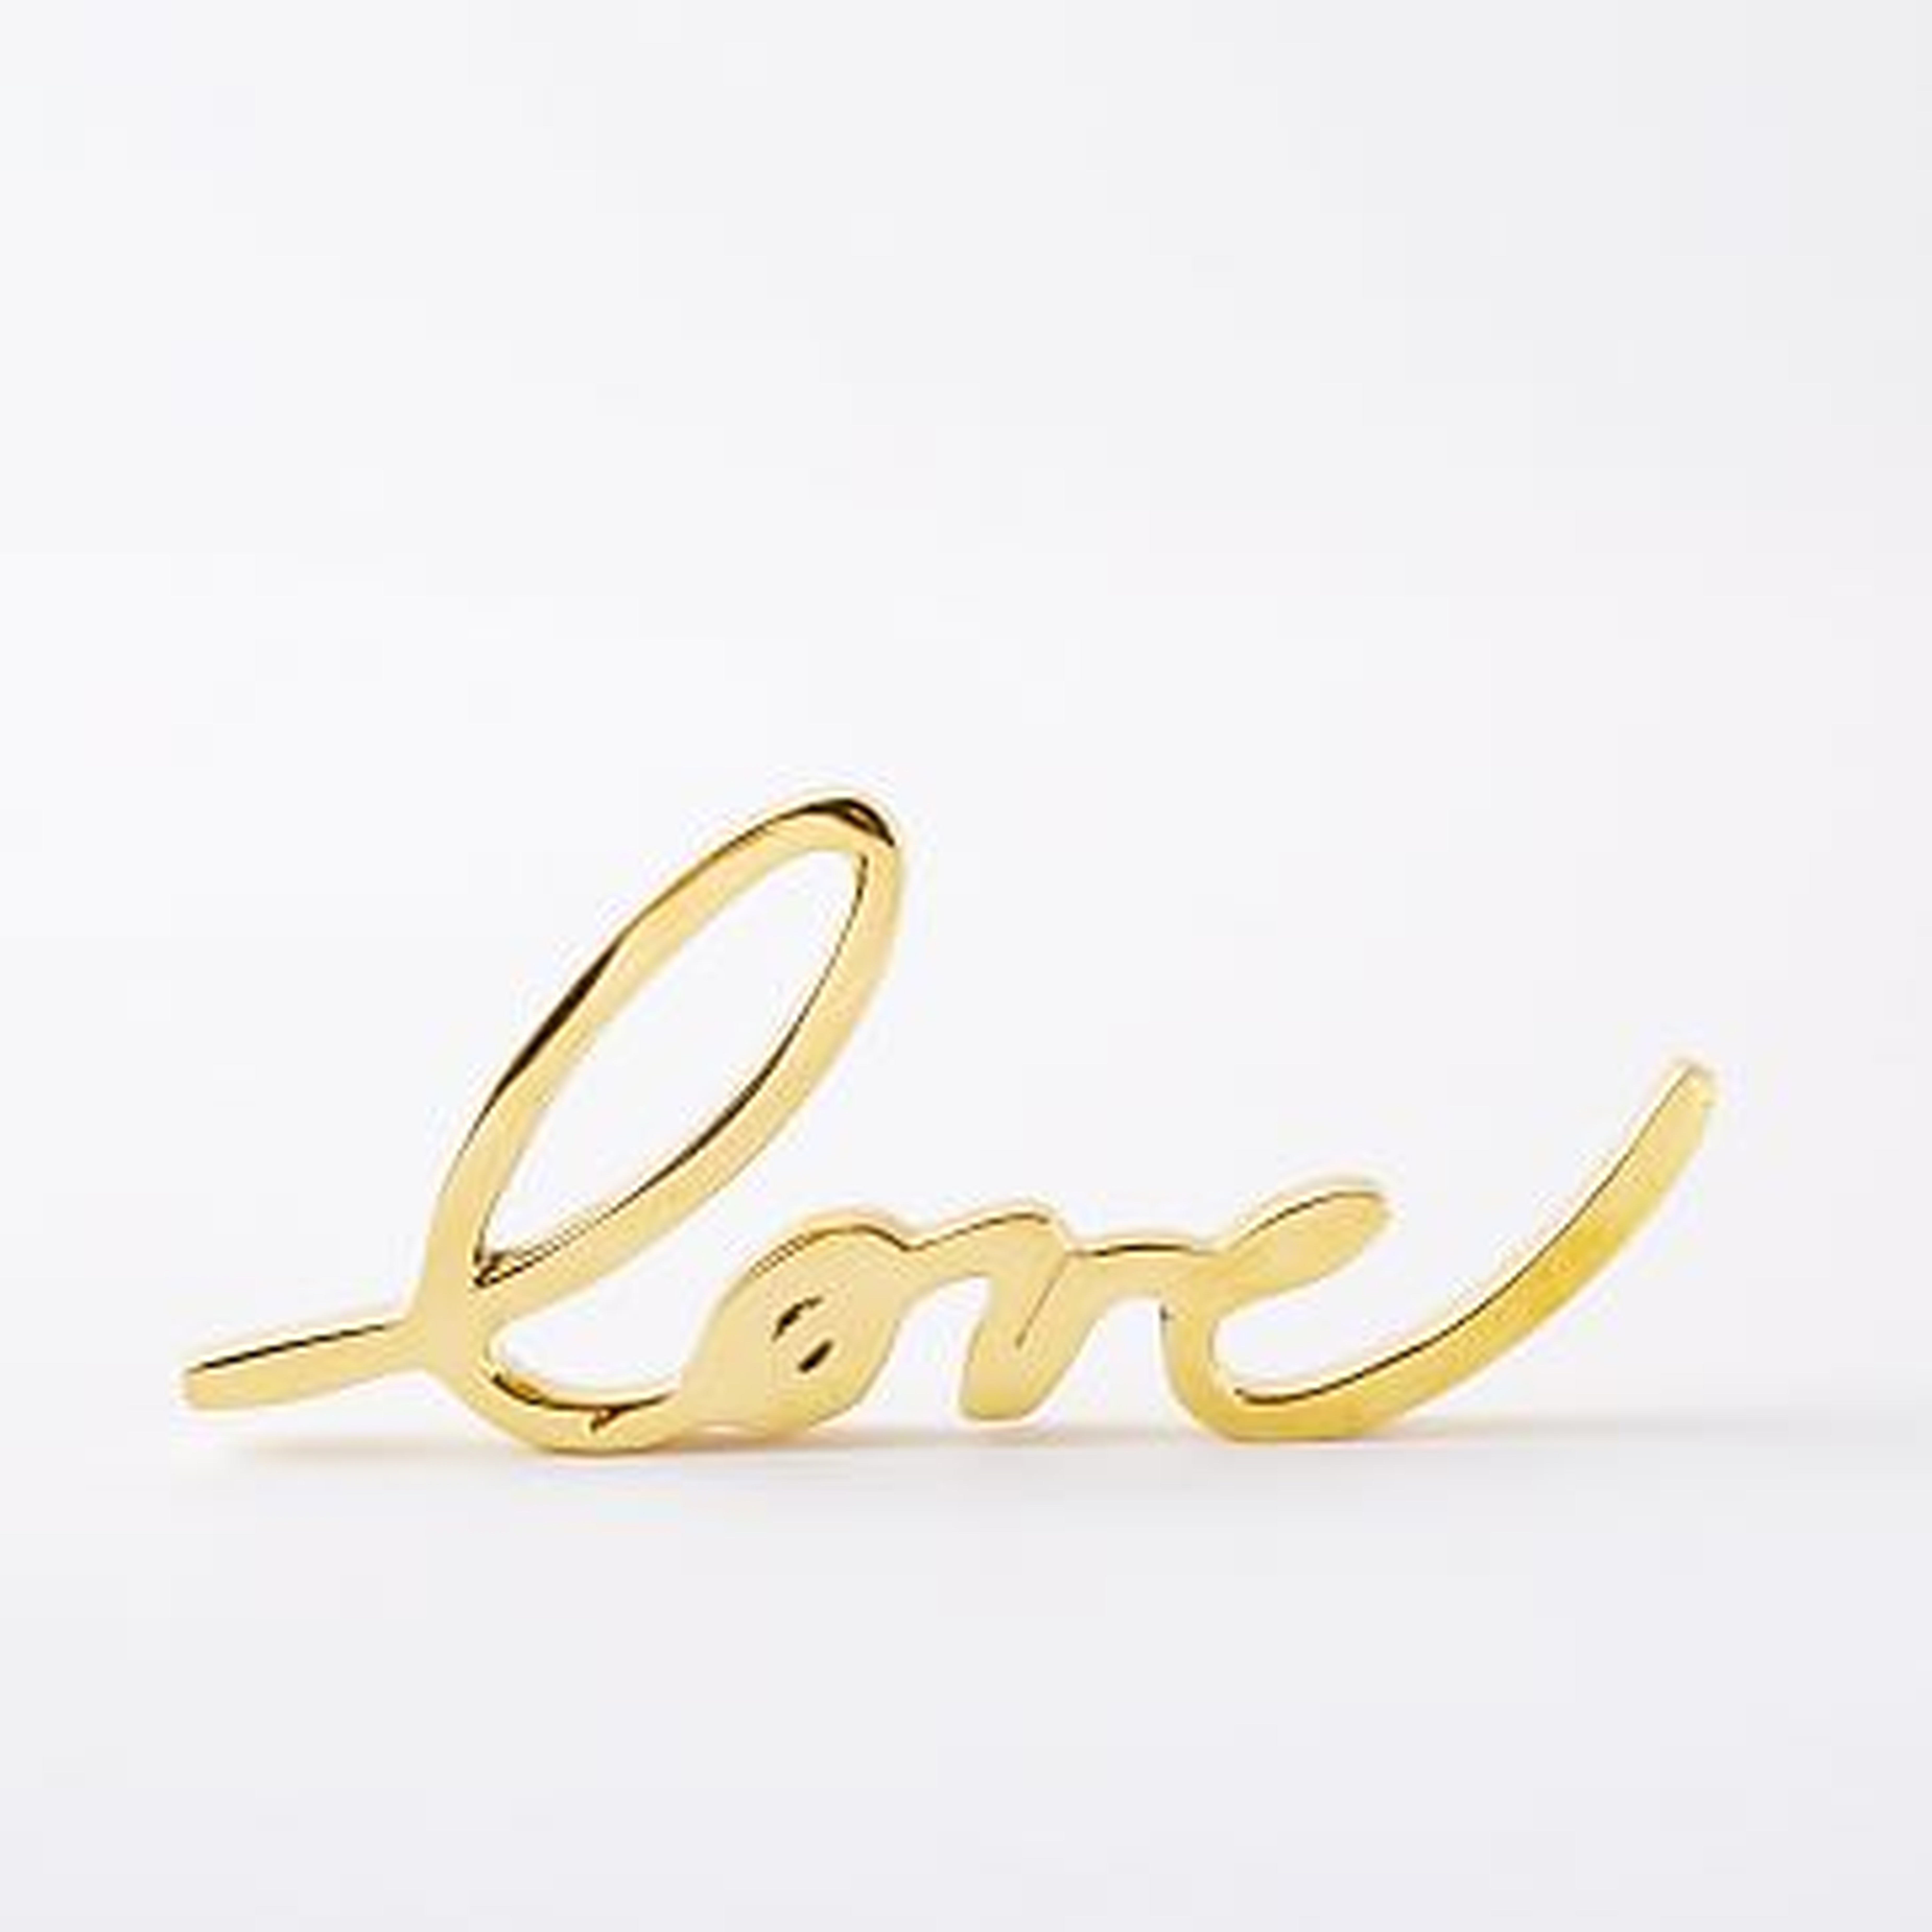 Brass Word Objects, Love - West Elm